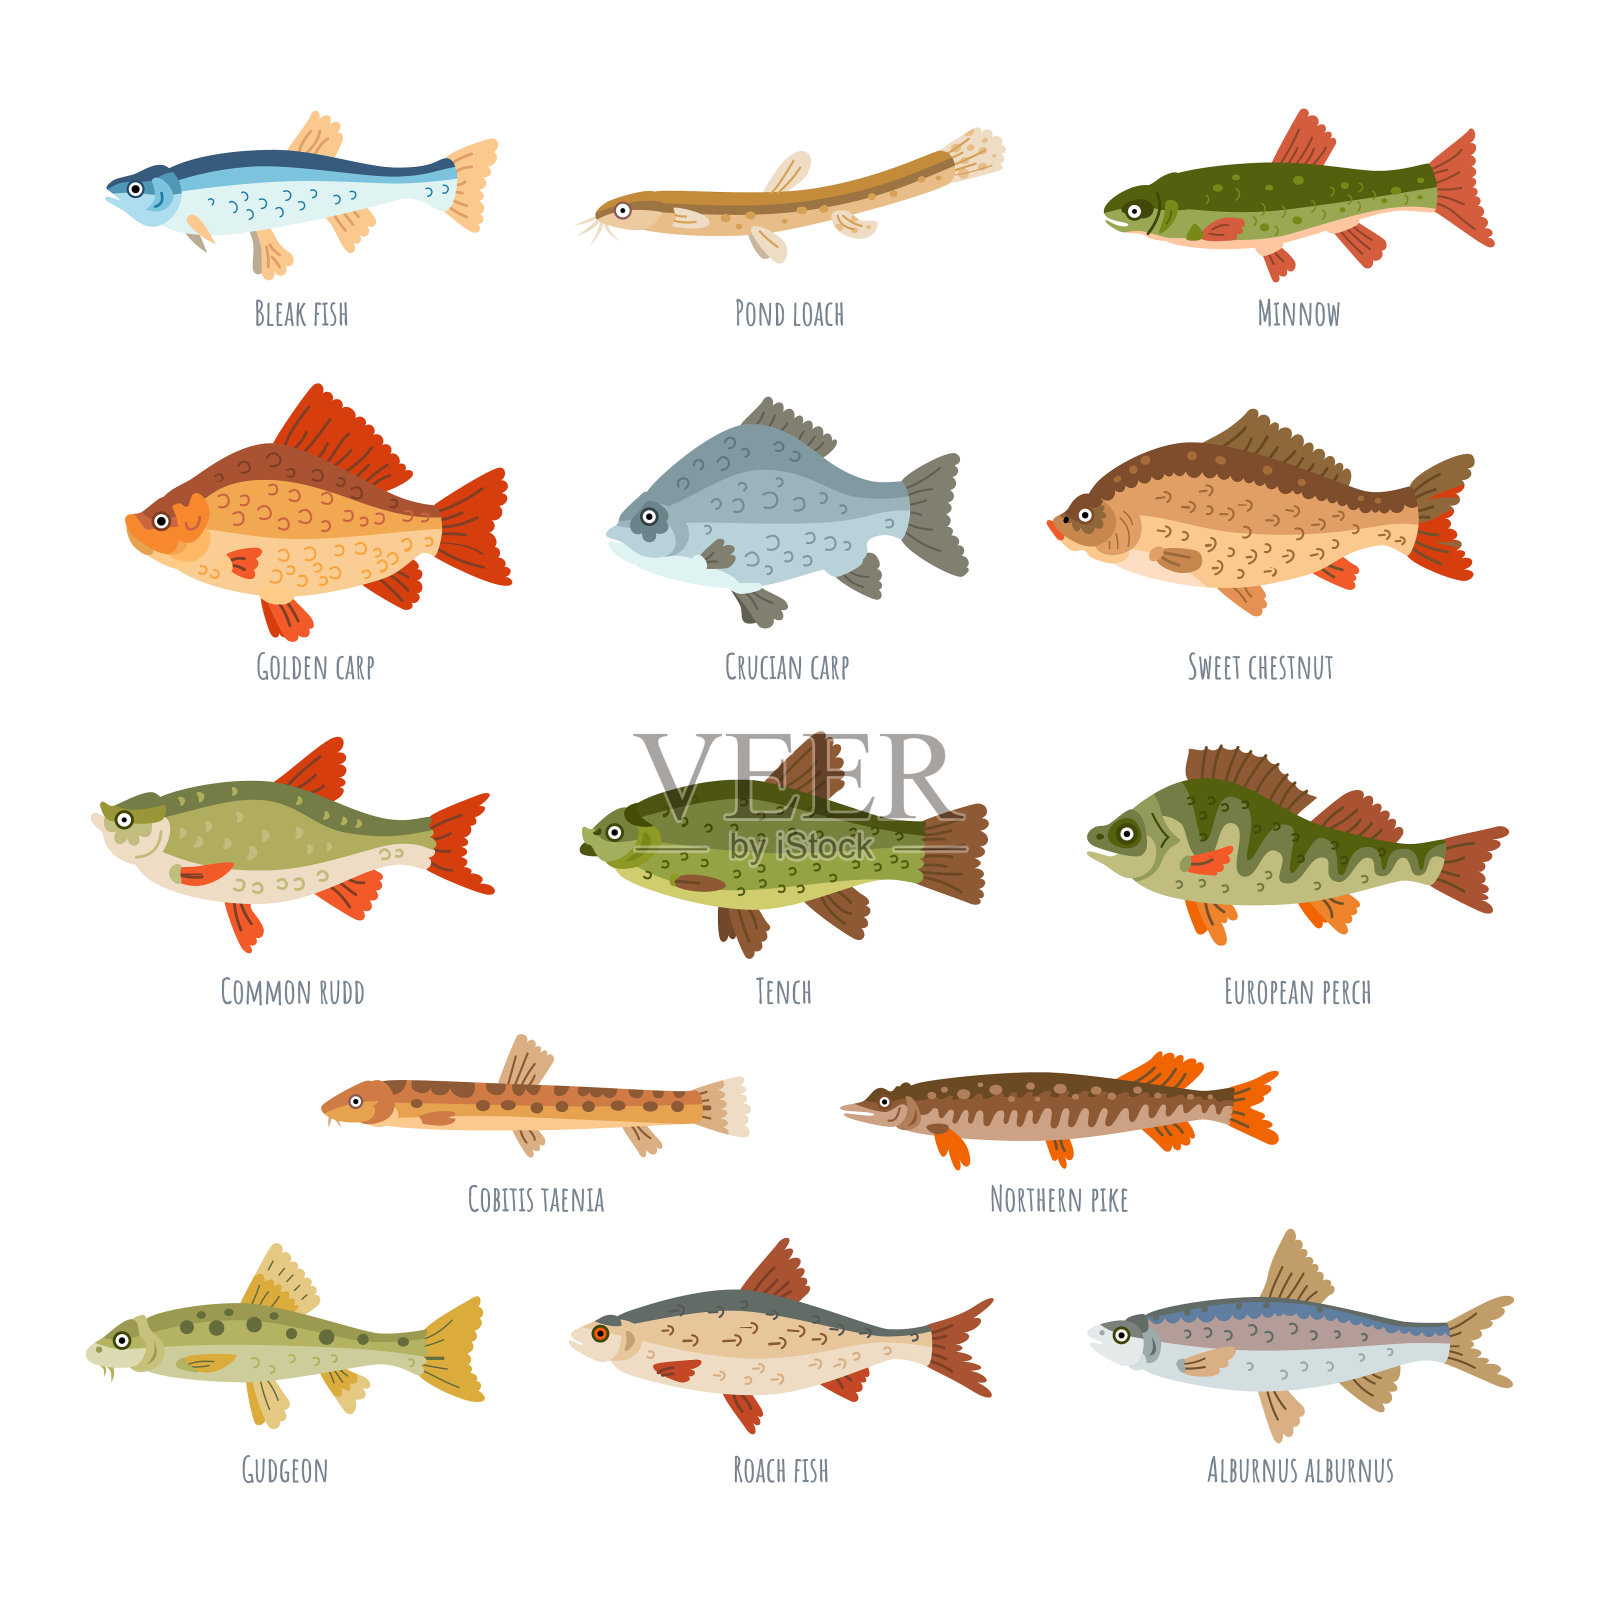 61.大斑薄鳅-中国南方淡水鱼类-图片